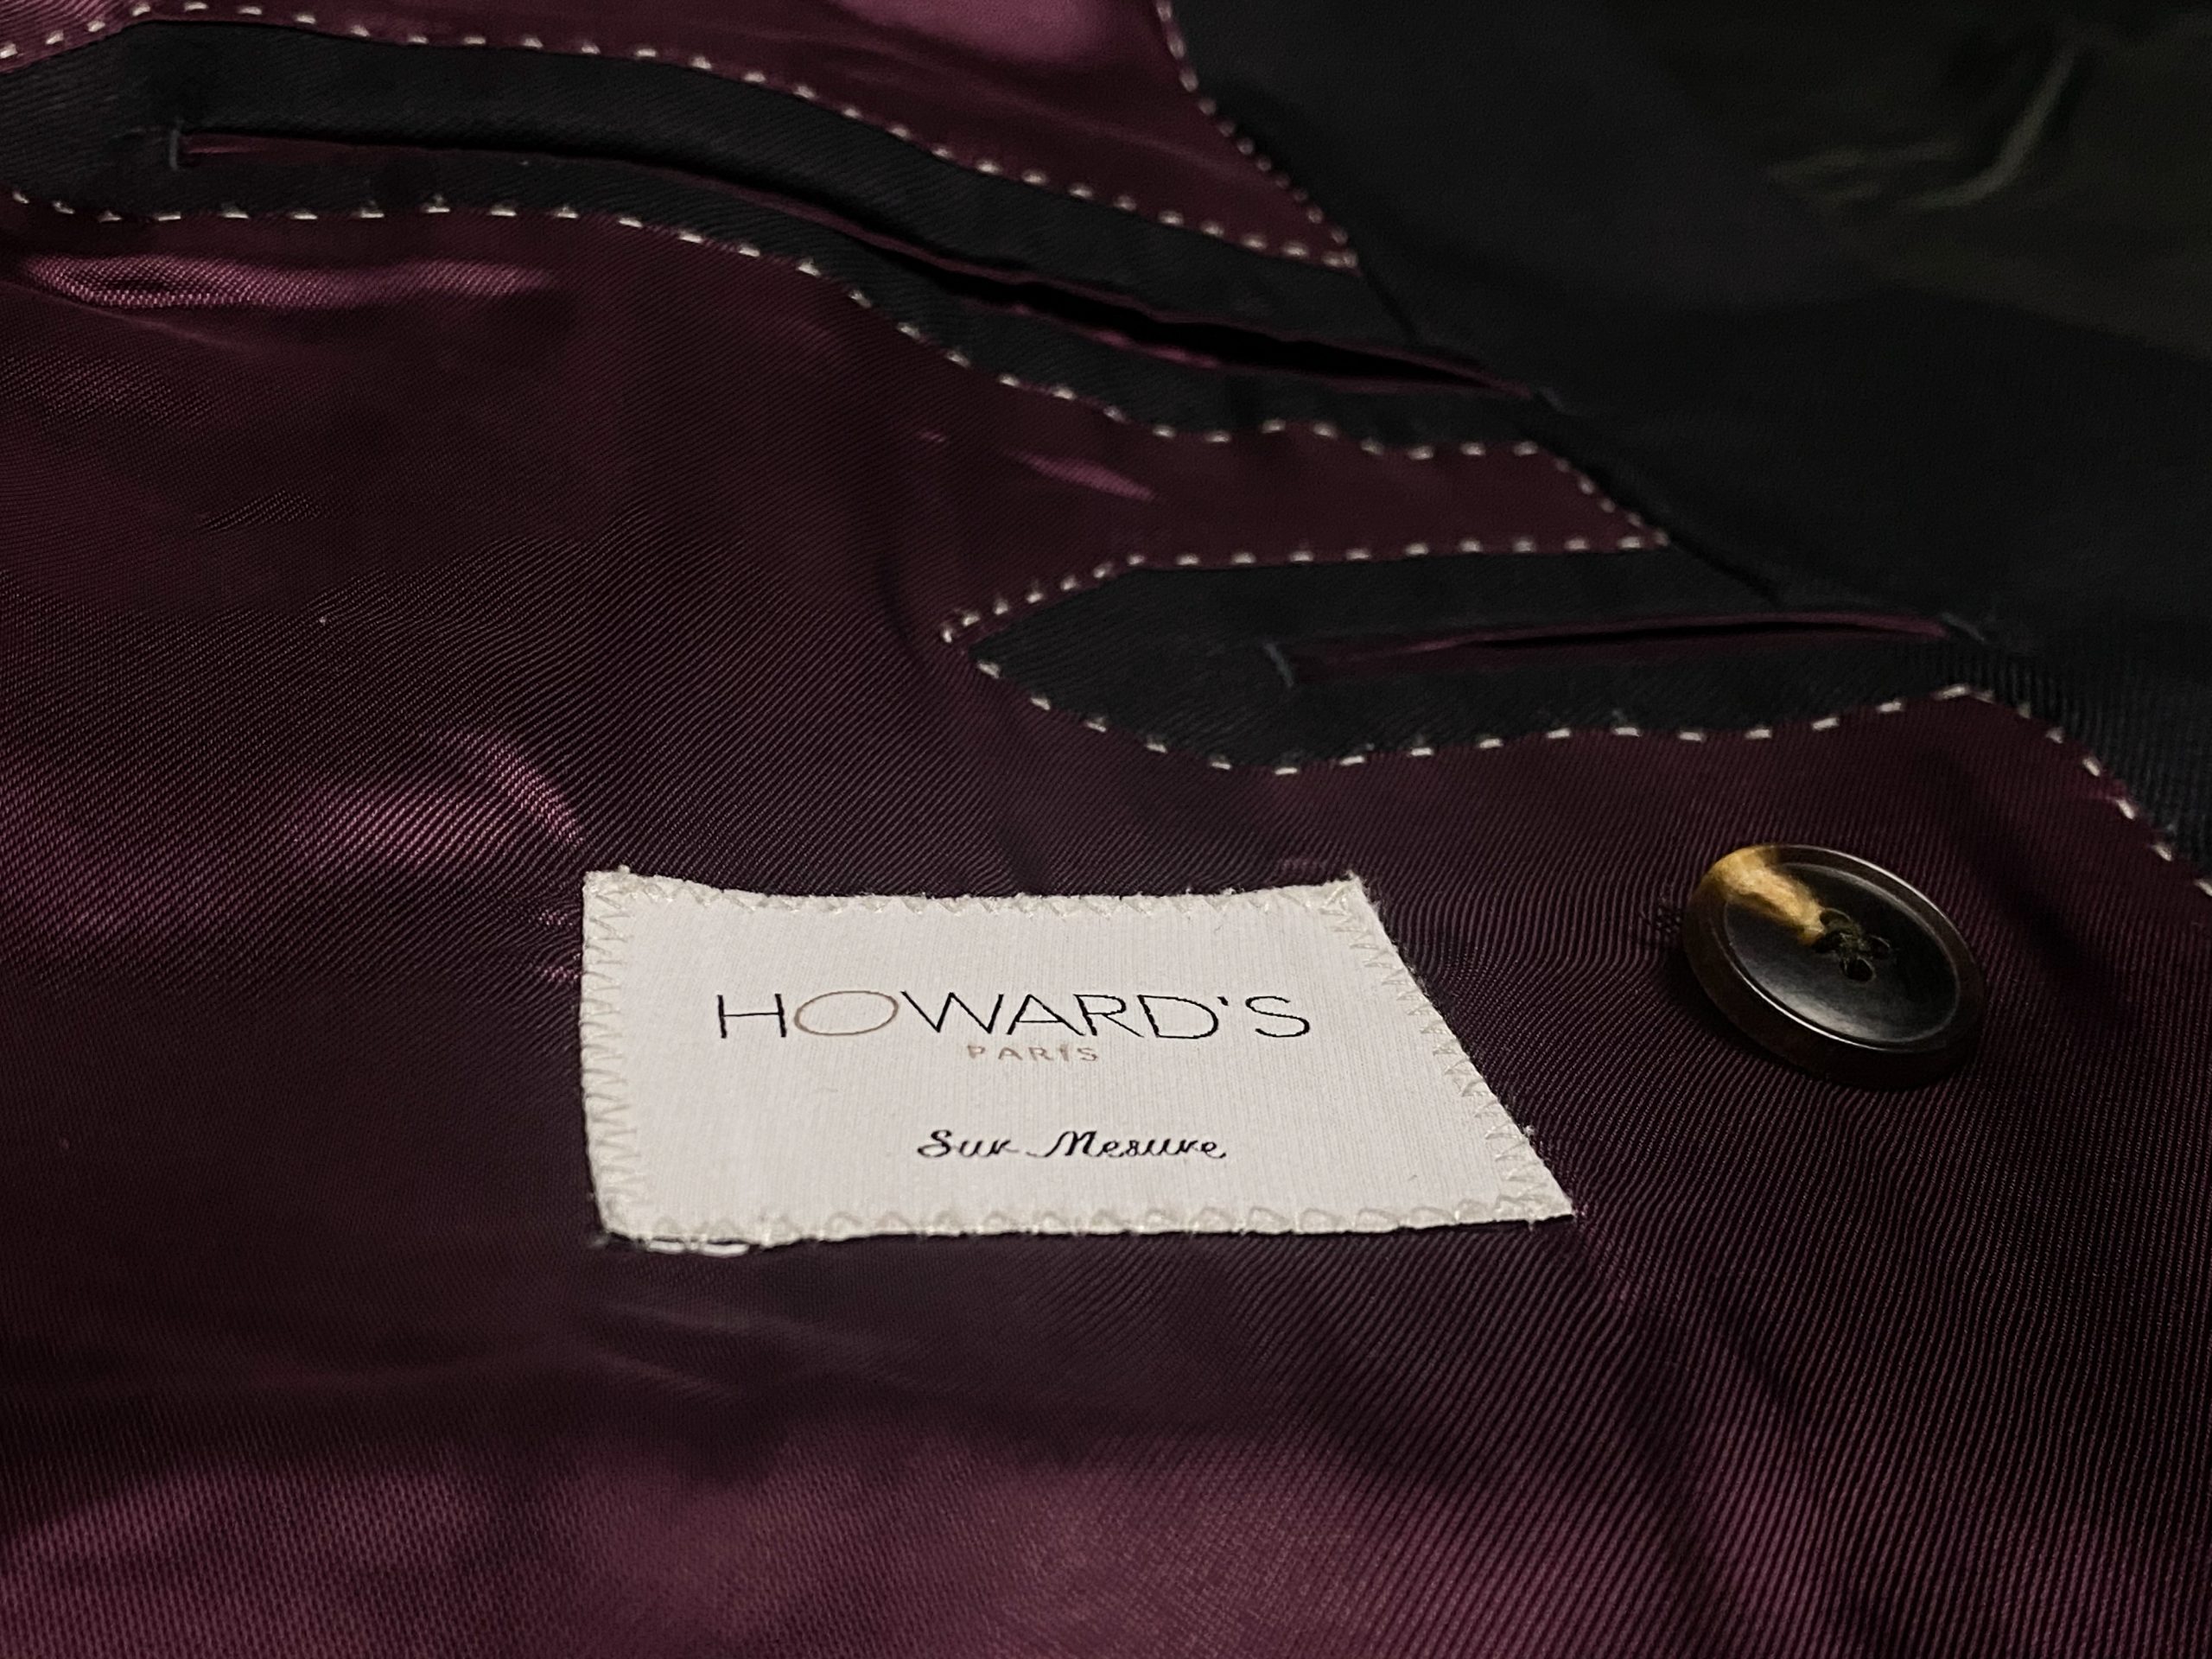 Howard's Paris, mon premier costume sur-mesure - Sartorial Matters